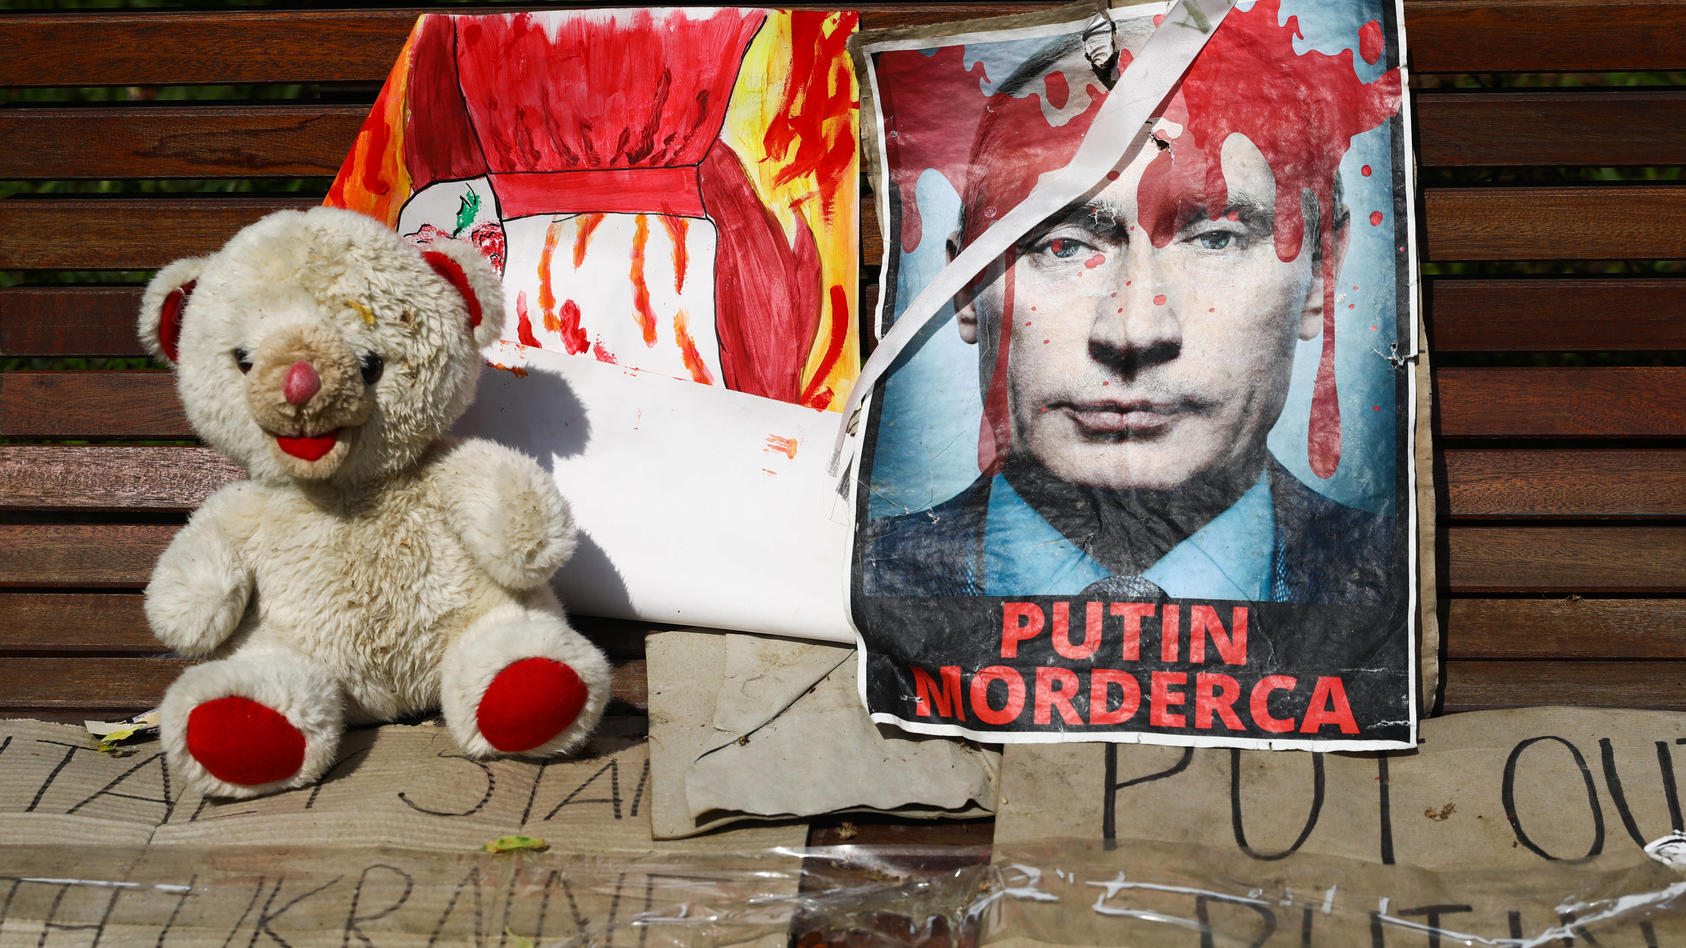 rote-farbe-auf-einem-bild-von-russland-prasident-wladimir-putin-die-botschaft-die-dahinter-steckt-ist-mehr-als-deutlich